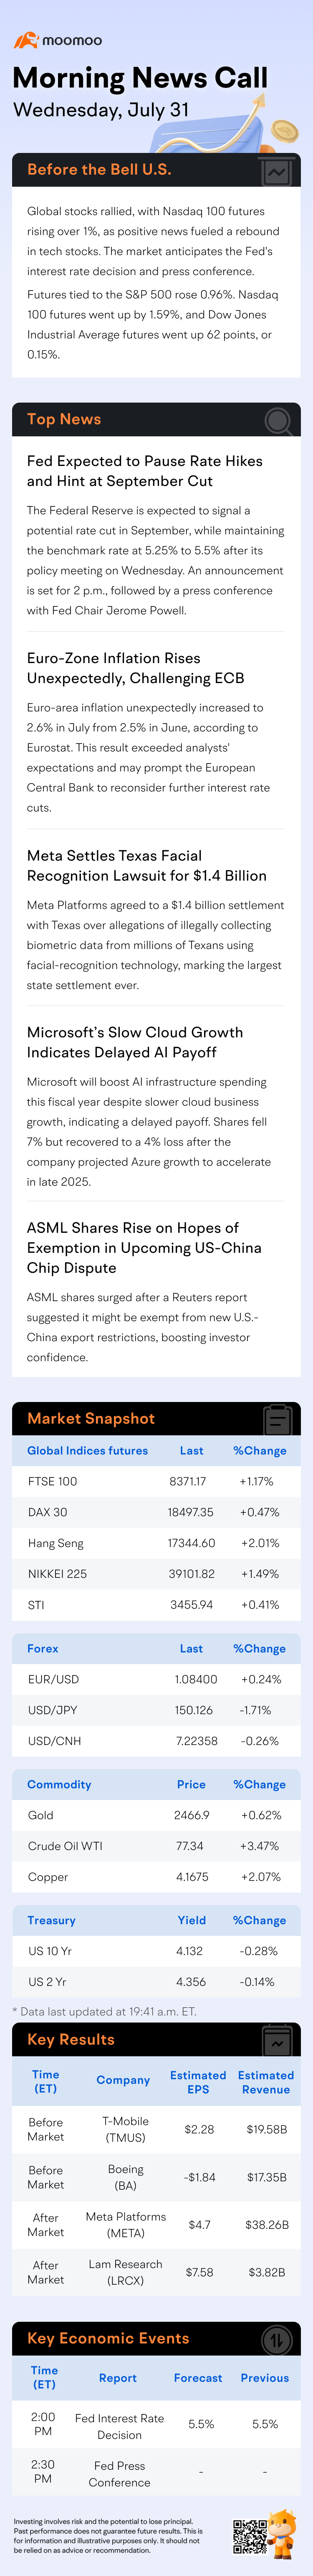 米国朝のニュースコール | テック株式市場が利上げ決定を待つ中で急騰